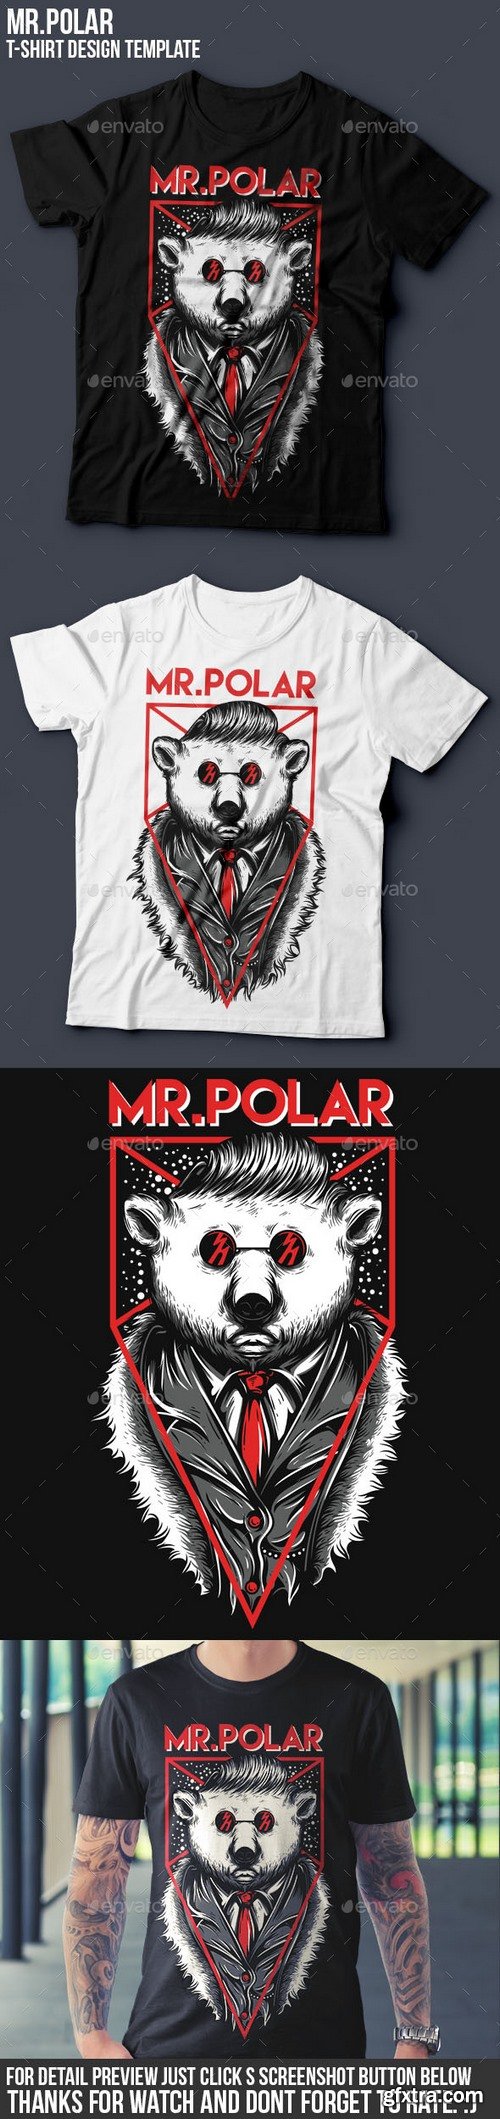 Graphicriver - Mr.Polar T-Shirt Design 16346929